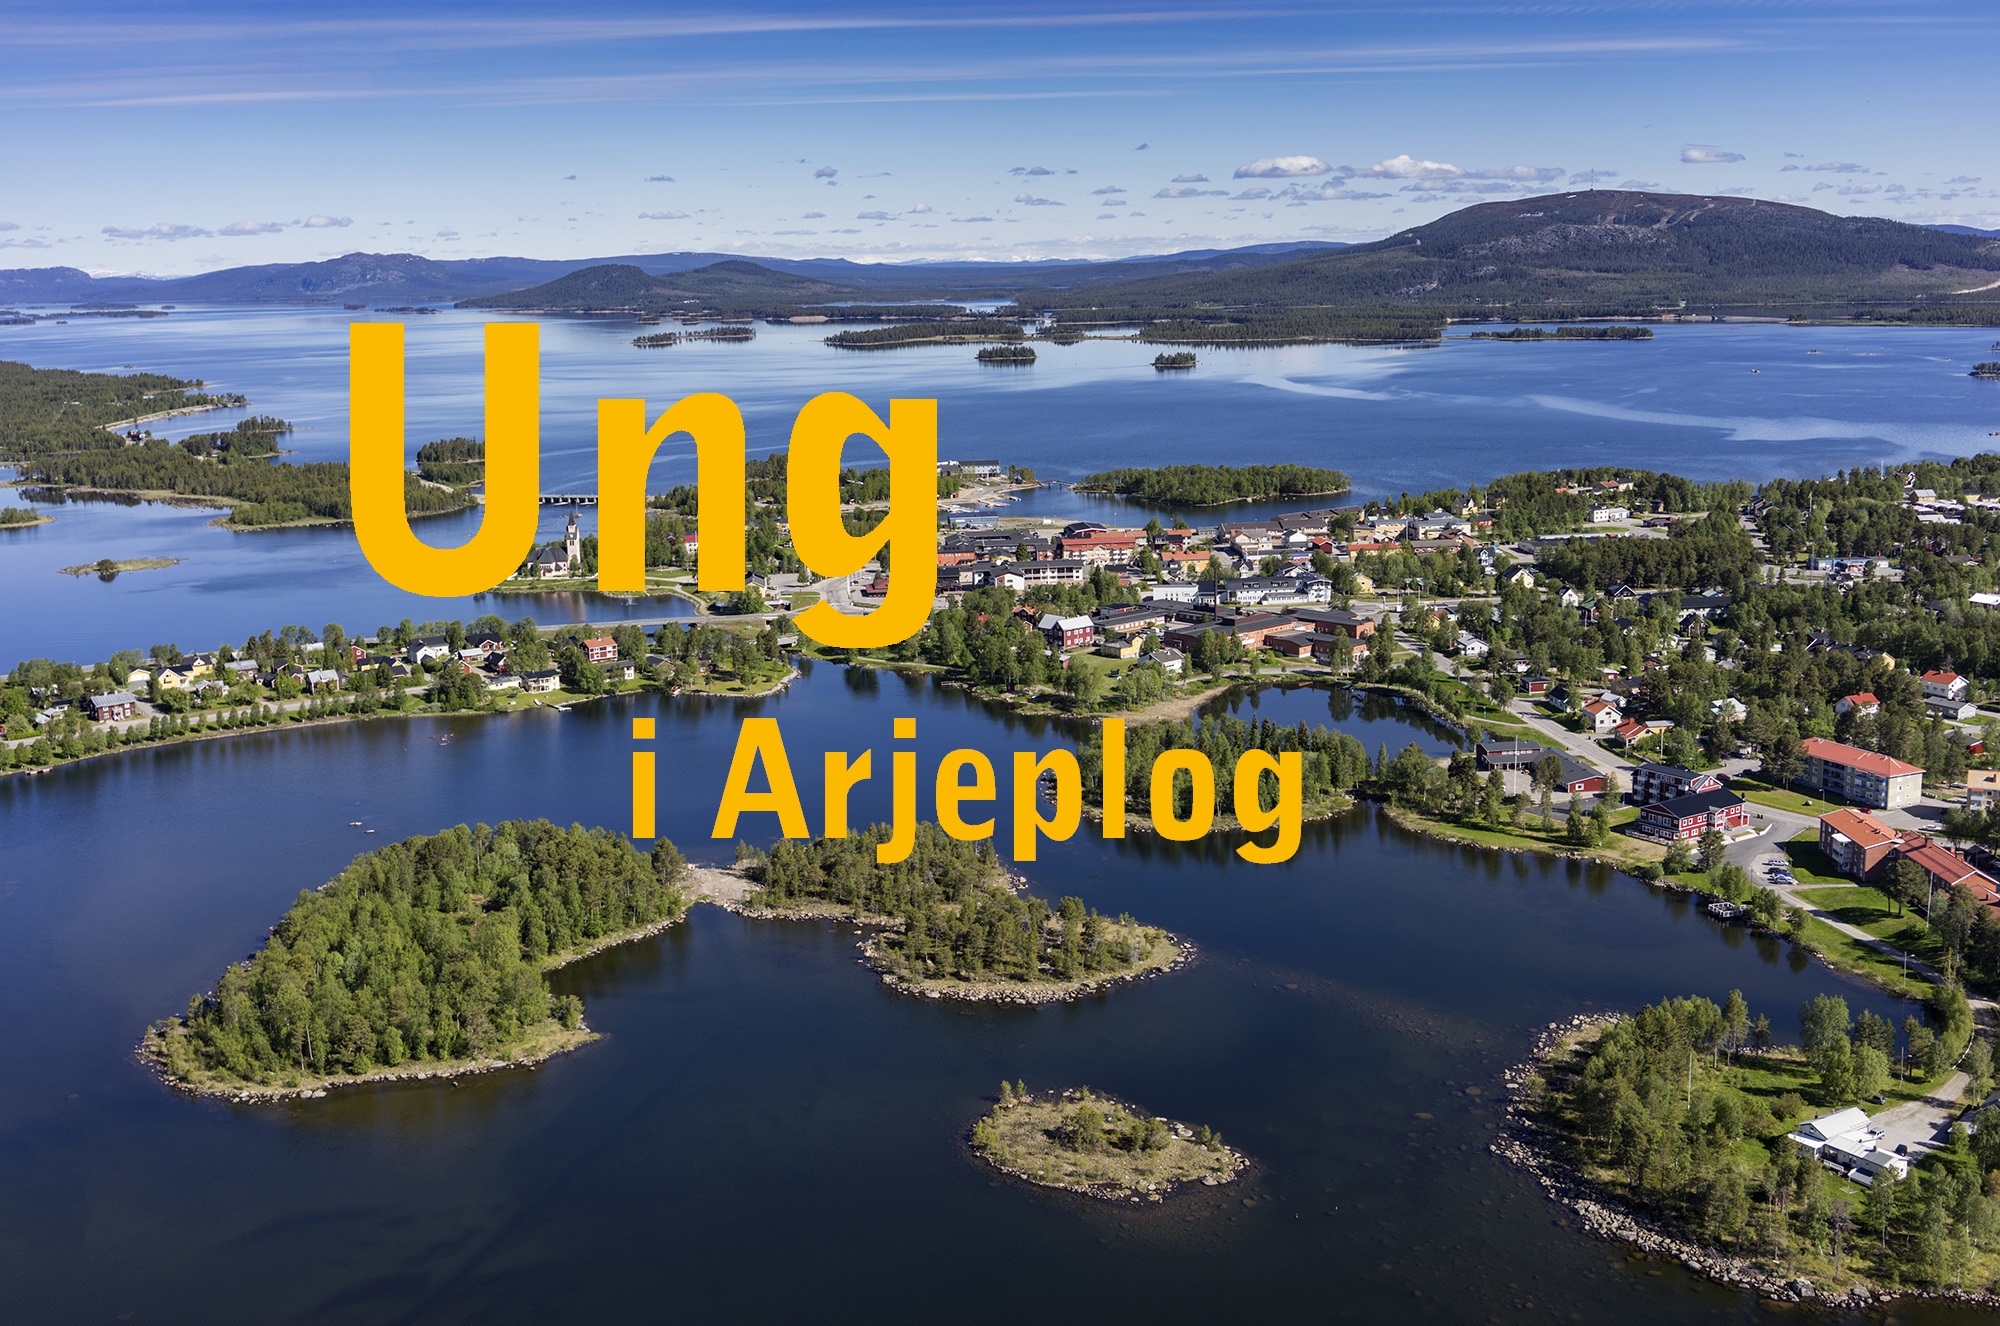 Vy över Arjeplog, med texten "Ung i Arjeplog".